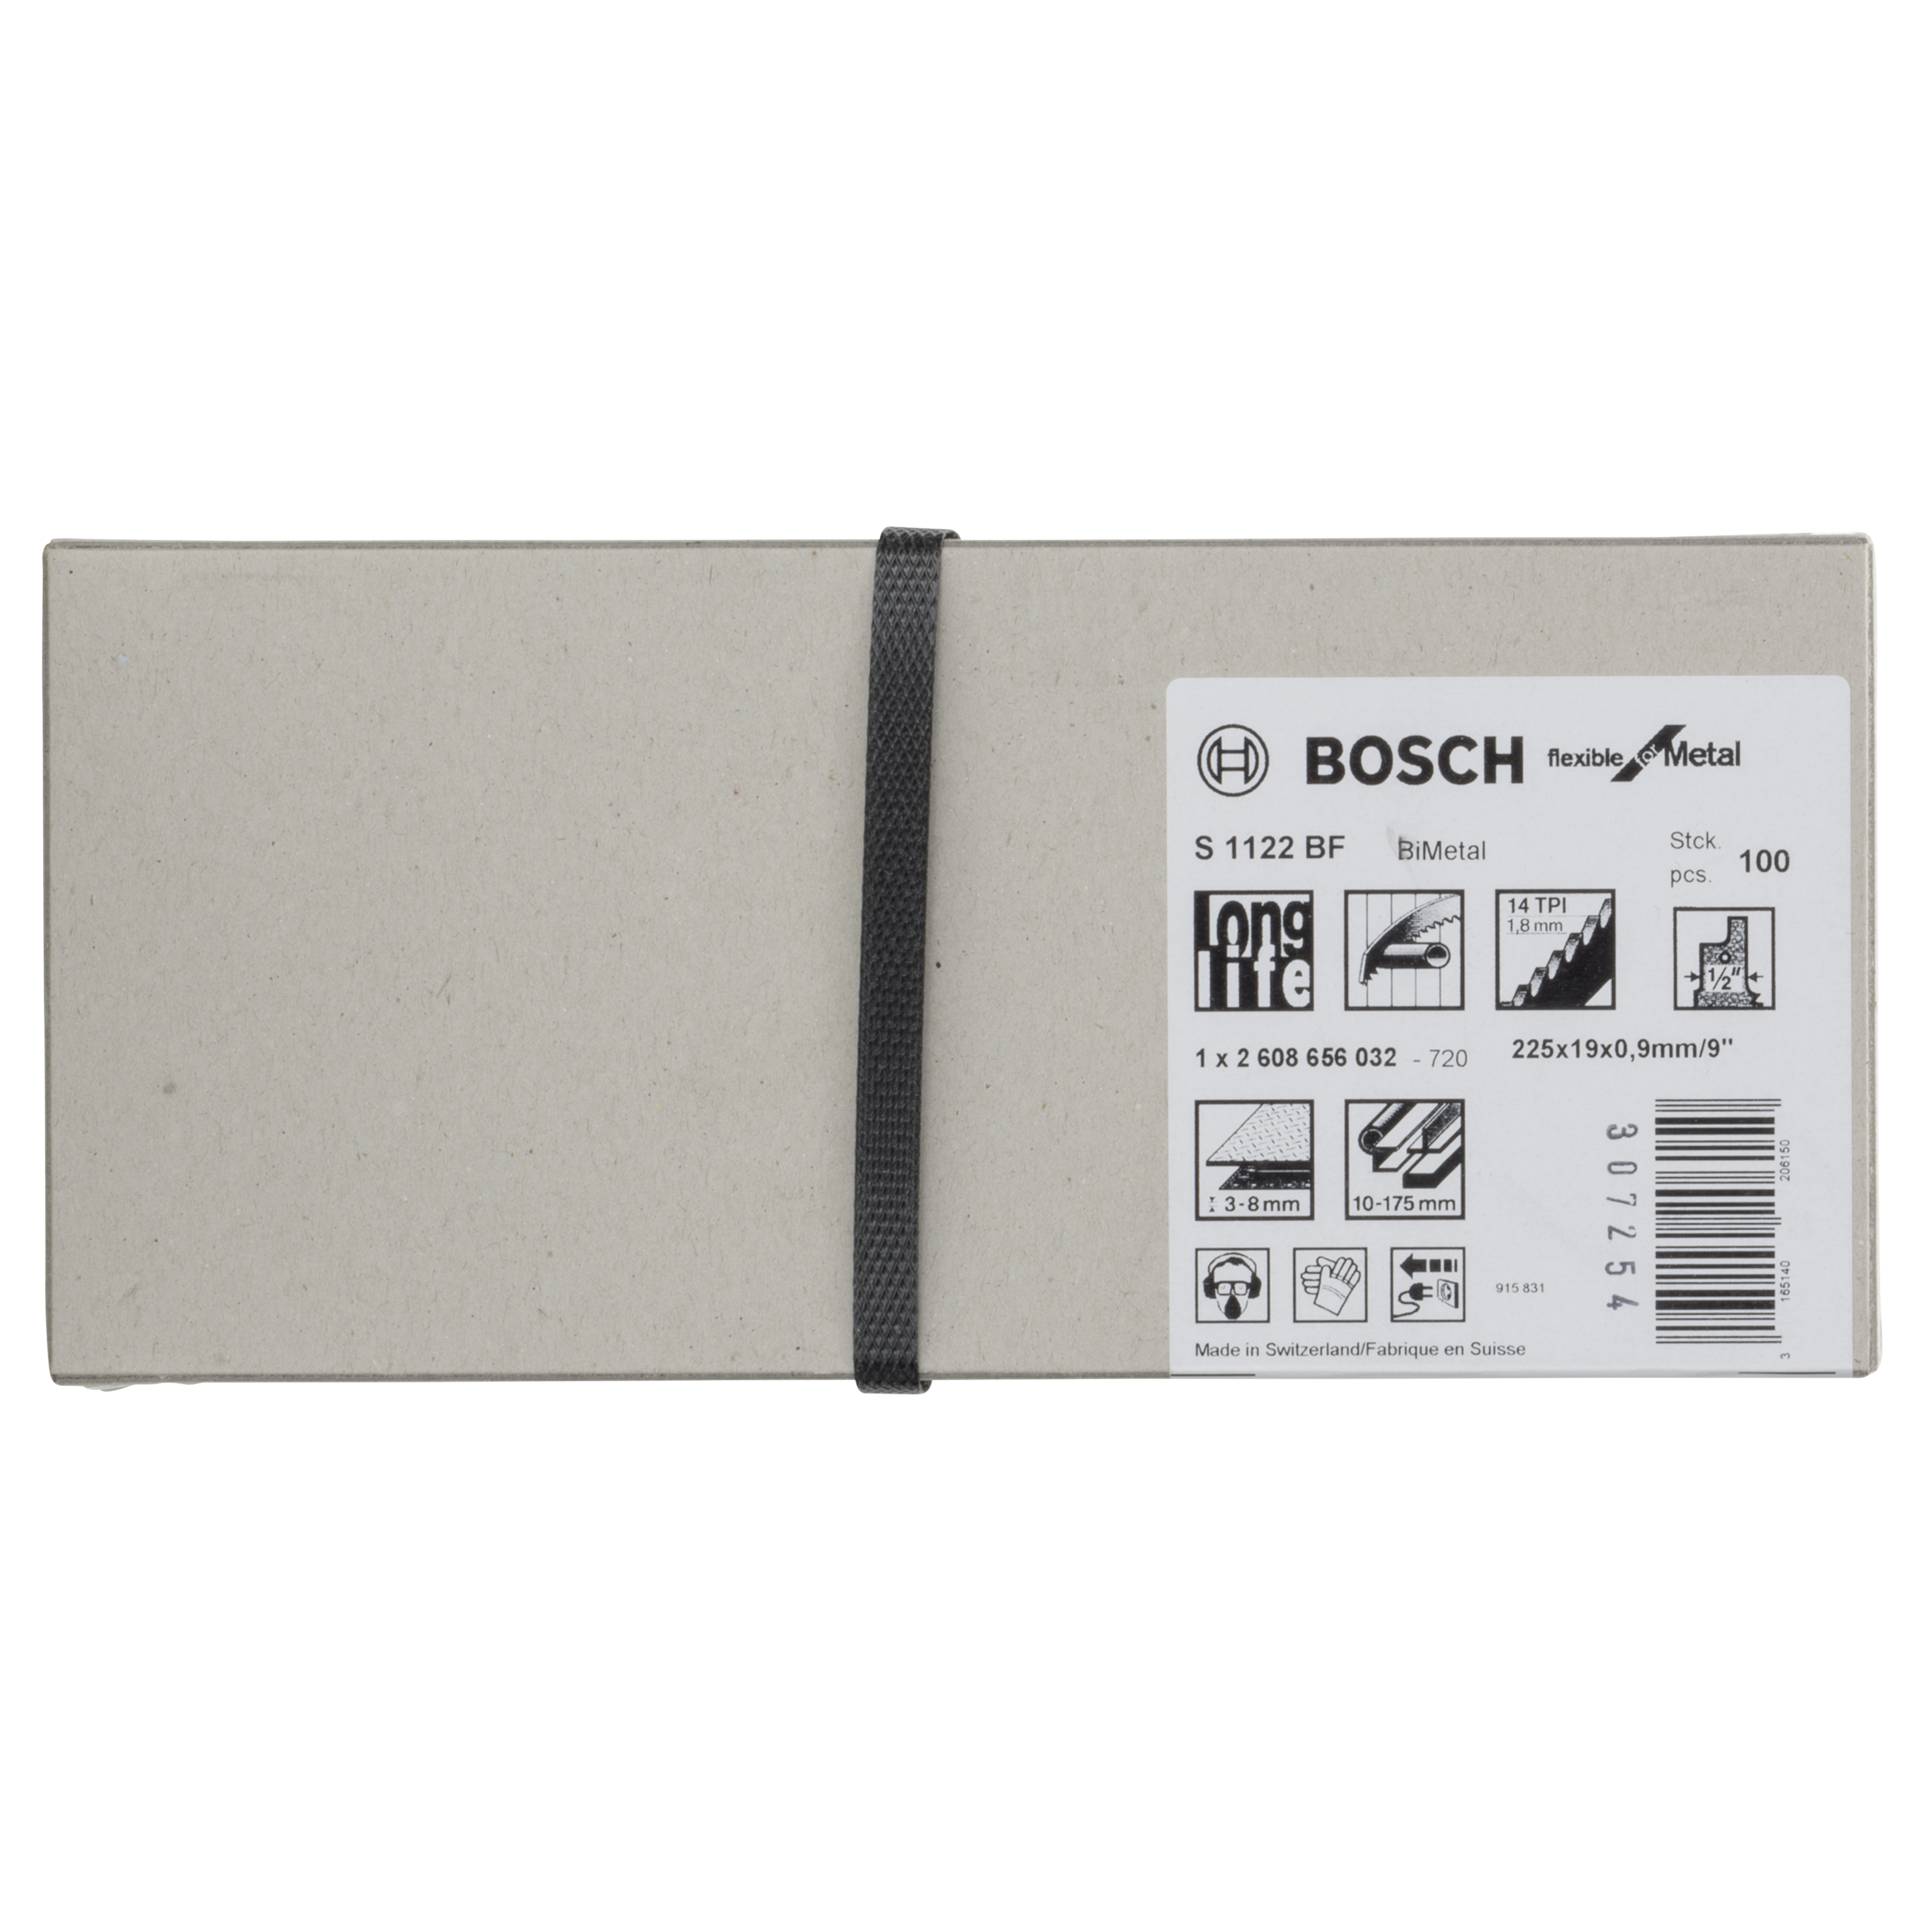 Bosch S 1122 BF